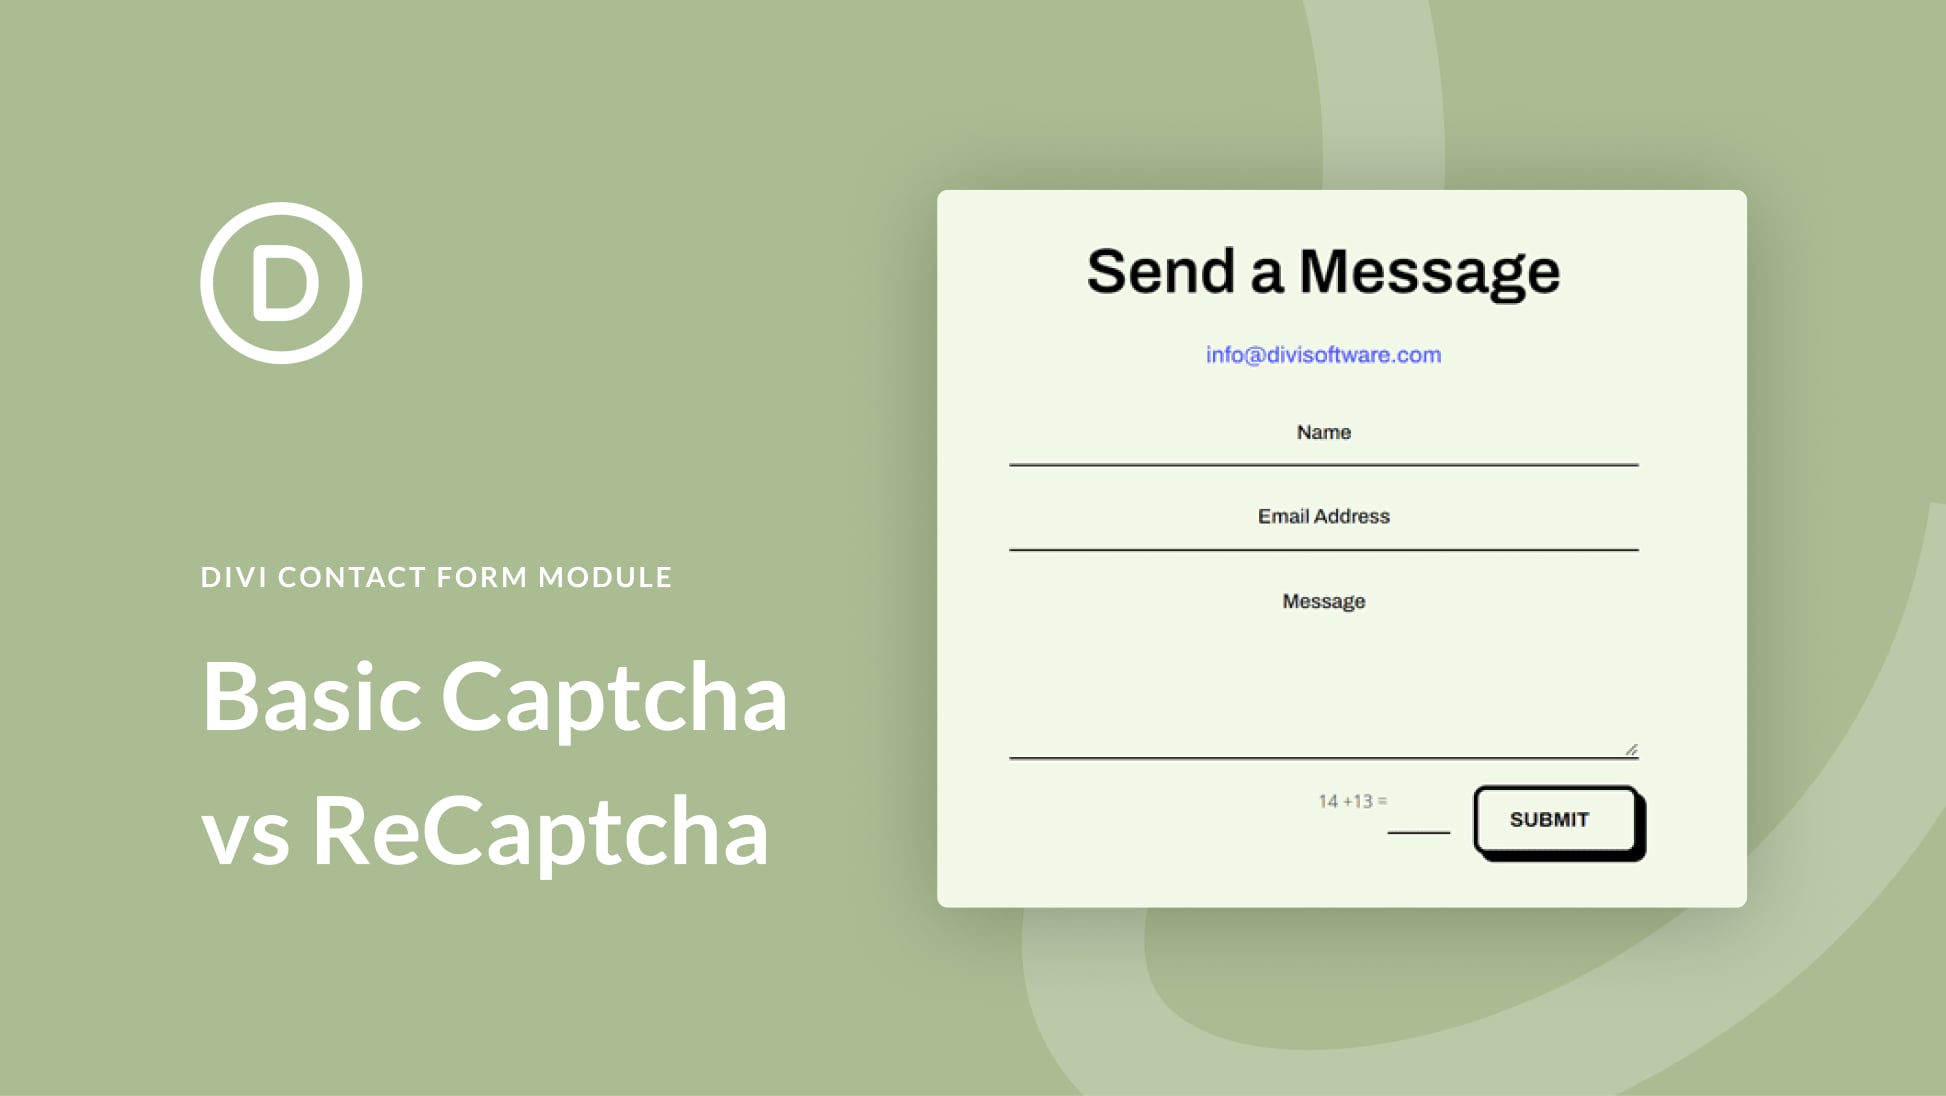 Using Basic Captcha vs ReCaptcha in Divi’s Contact Form Module